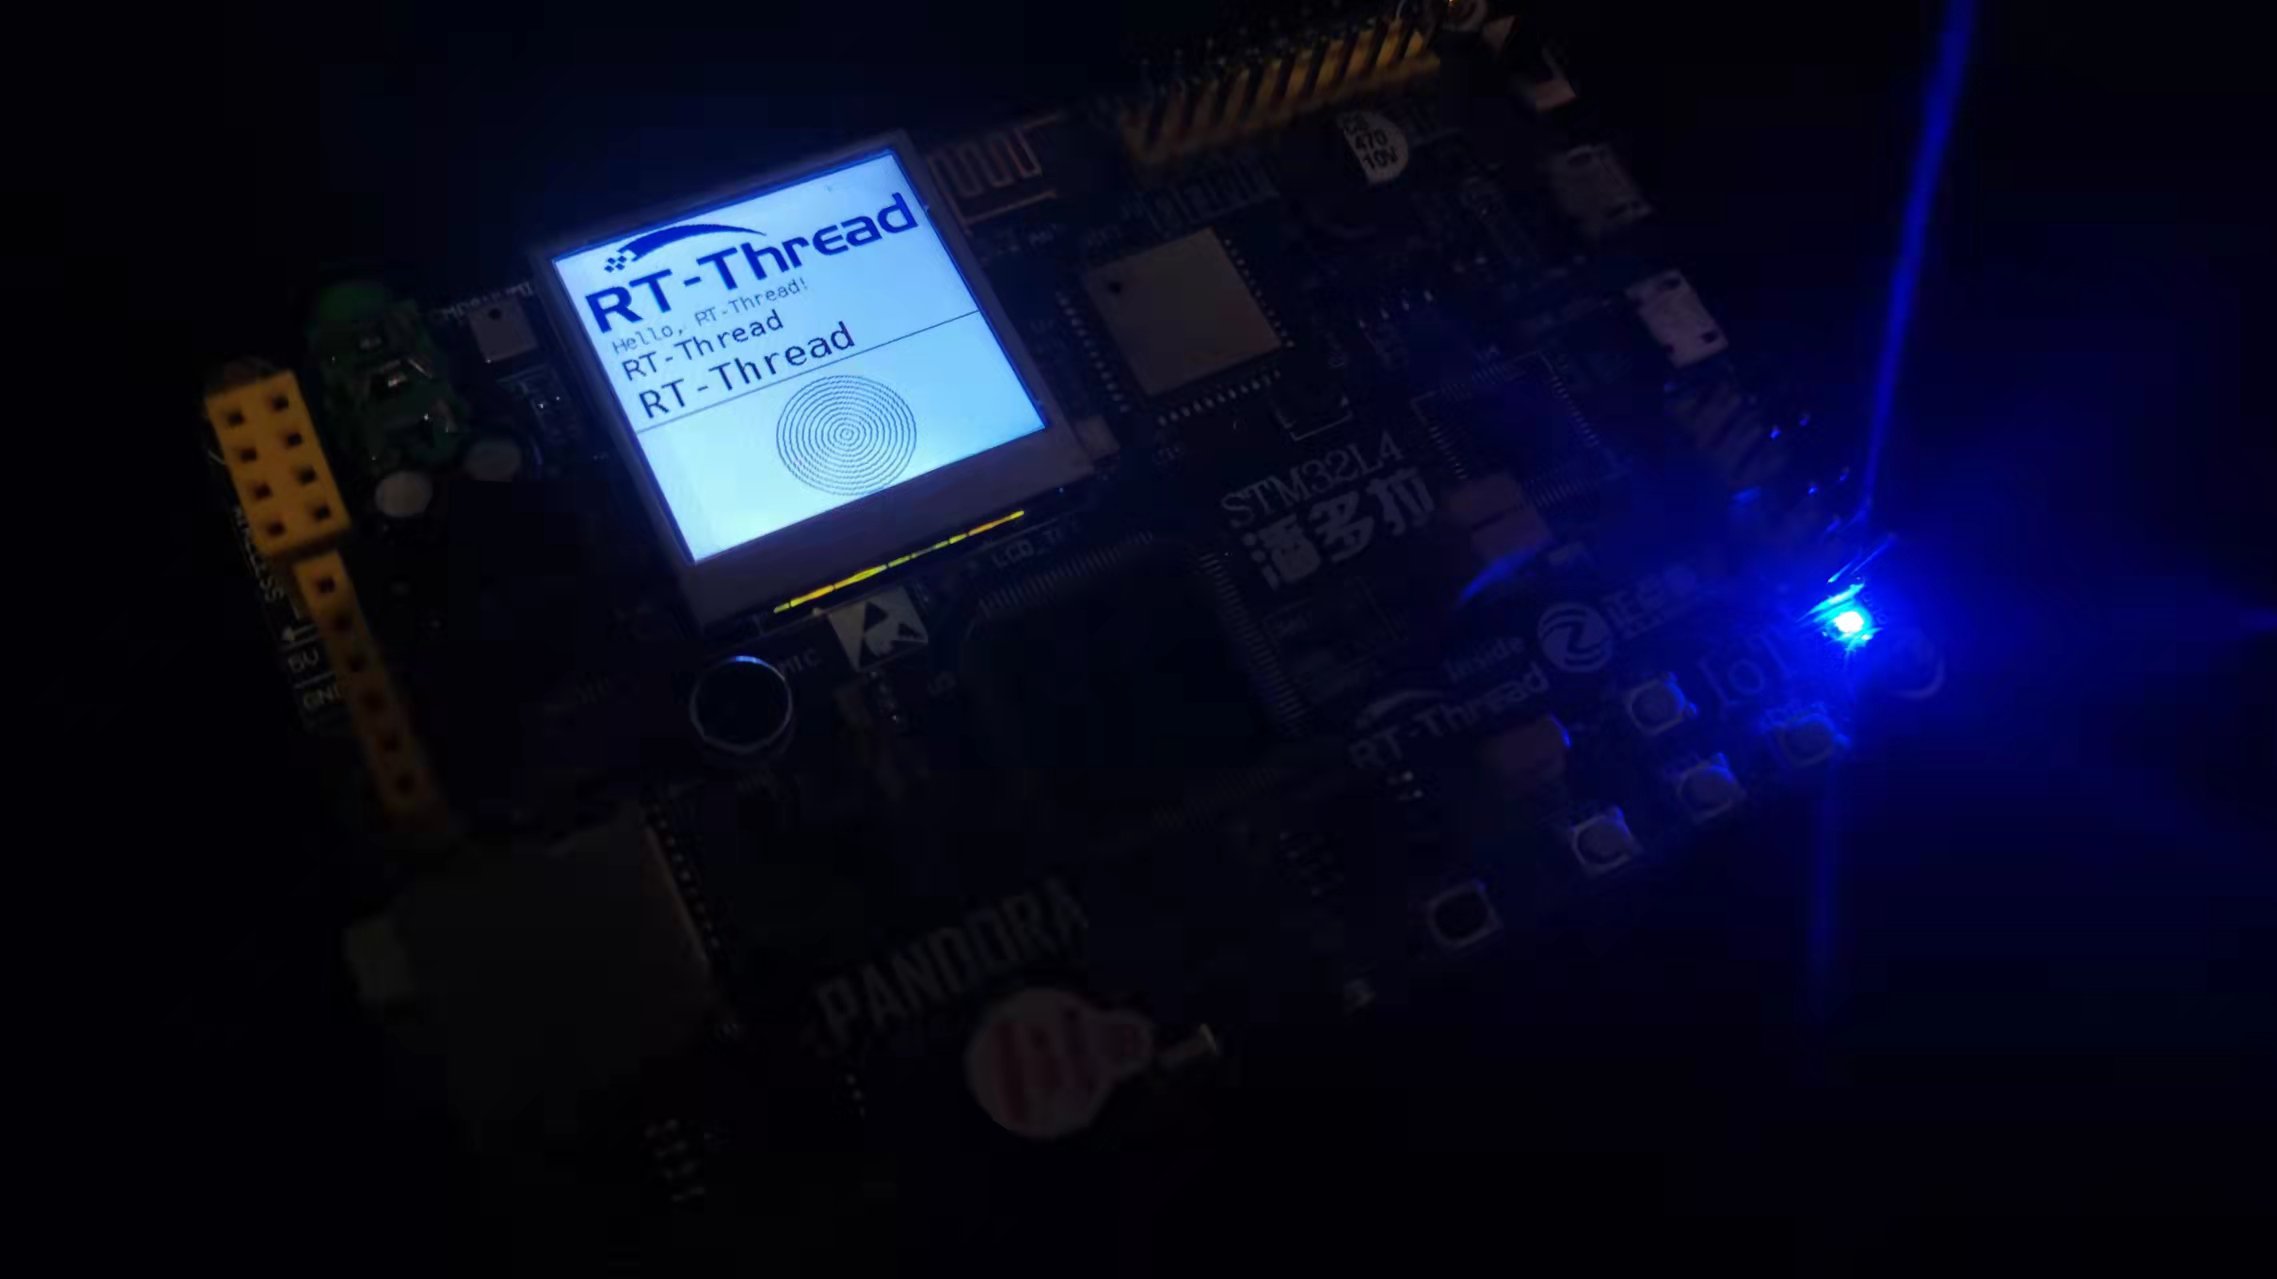 潘多拉 IoT Board RT-Thread LCD 显示